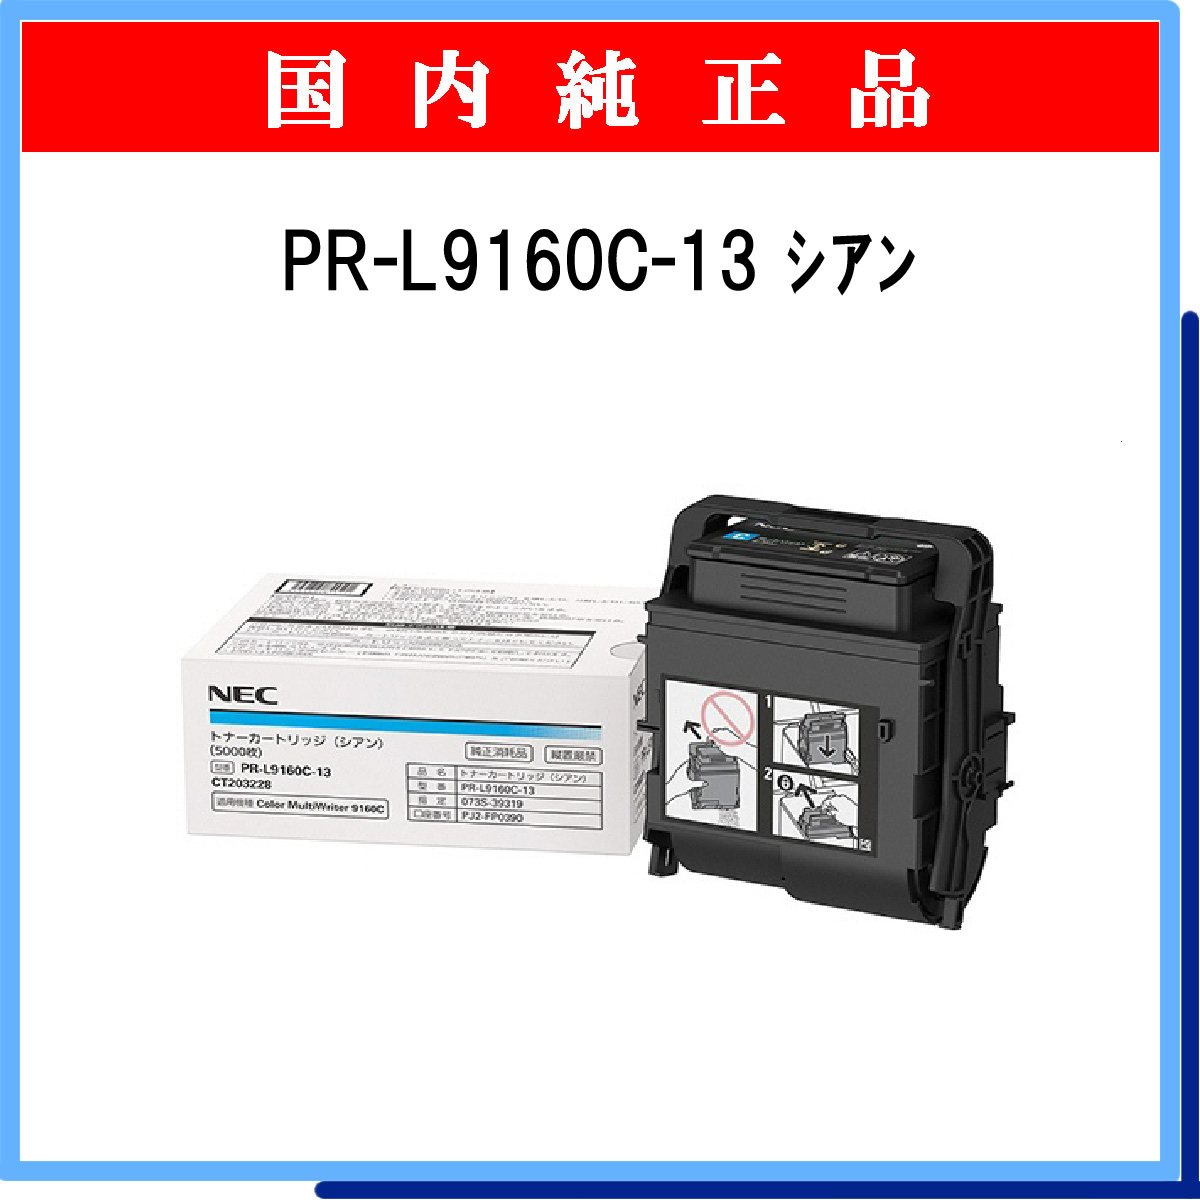 非常に高い品質 NEC PR-L9110C用トナーカートリッジ マゼンタ 約6000枚印刷可能 JIS X 6932 ISO IEC 19798  に基づく公表値